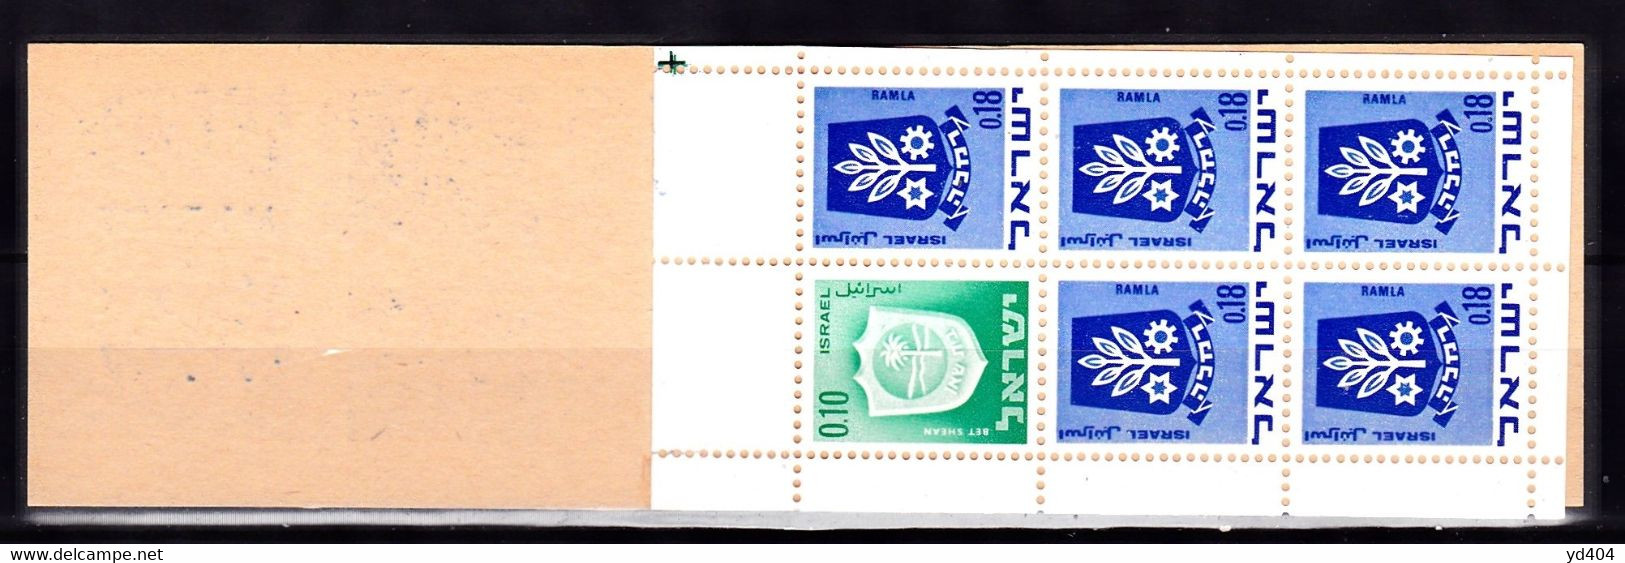 IL55- ISRAEL – 1970 - BOOKLETS – MI # 326(x1)-486(x5) MNH 7 € - Carnets